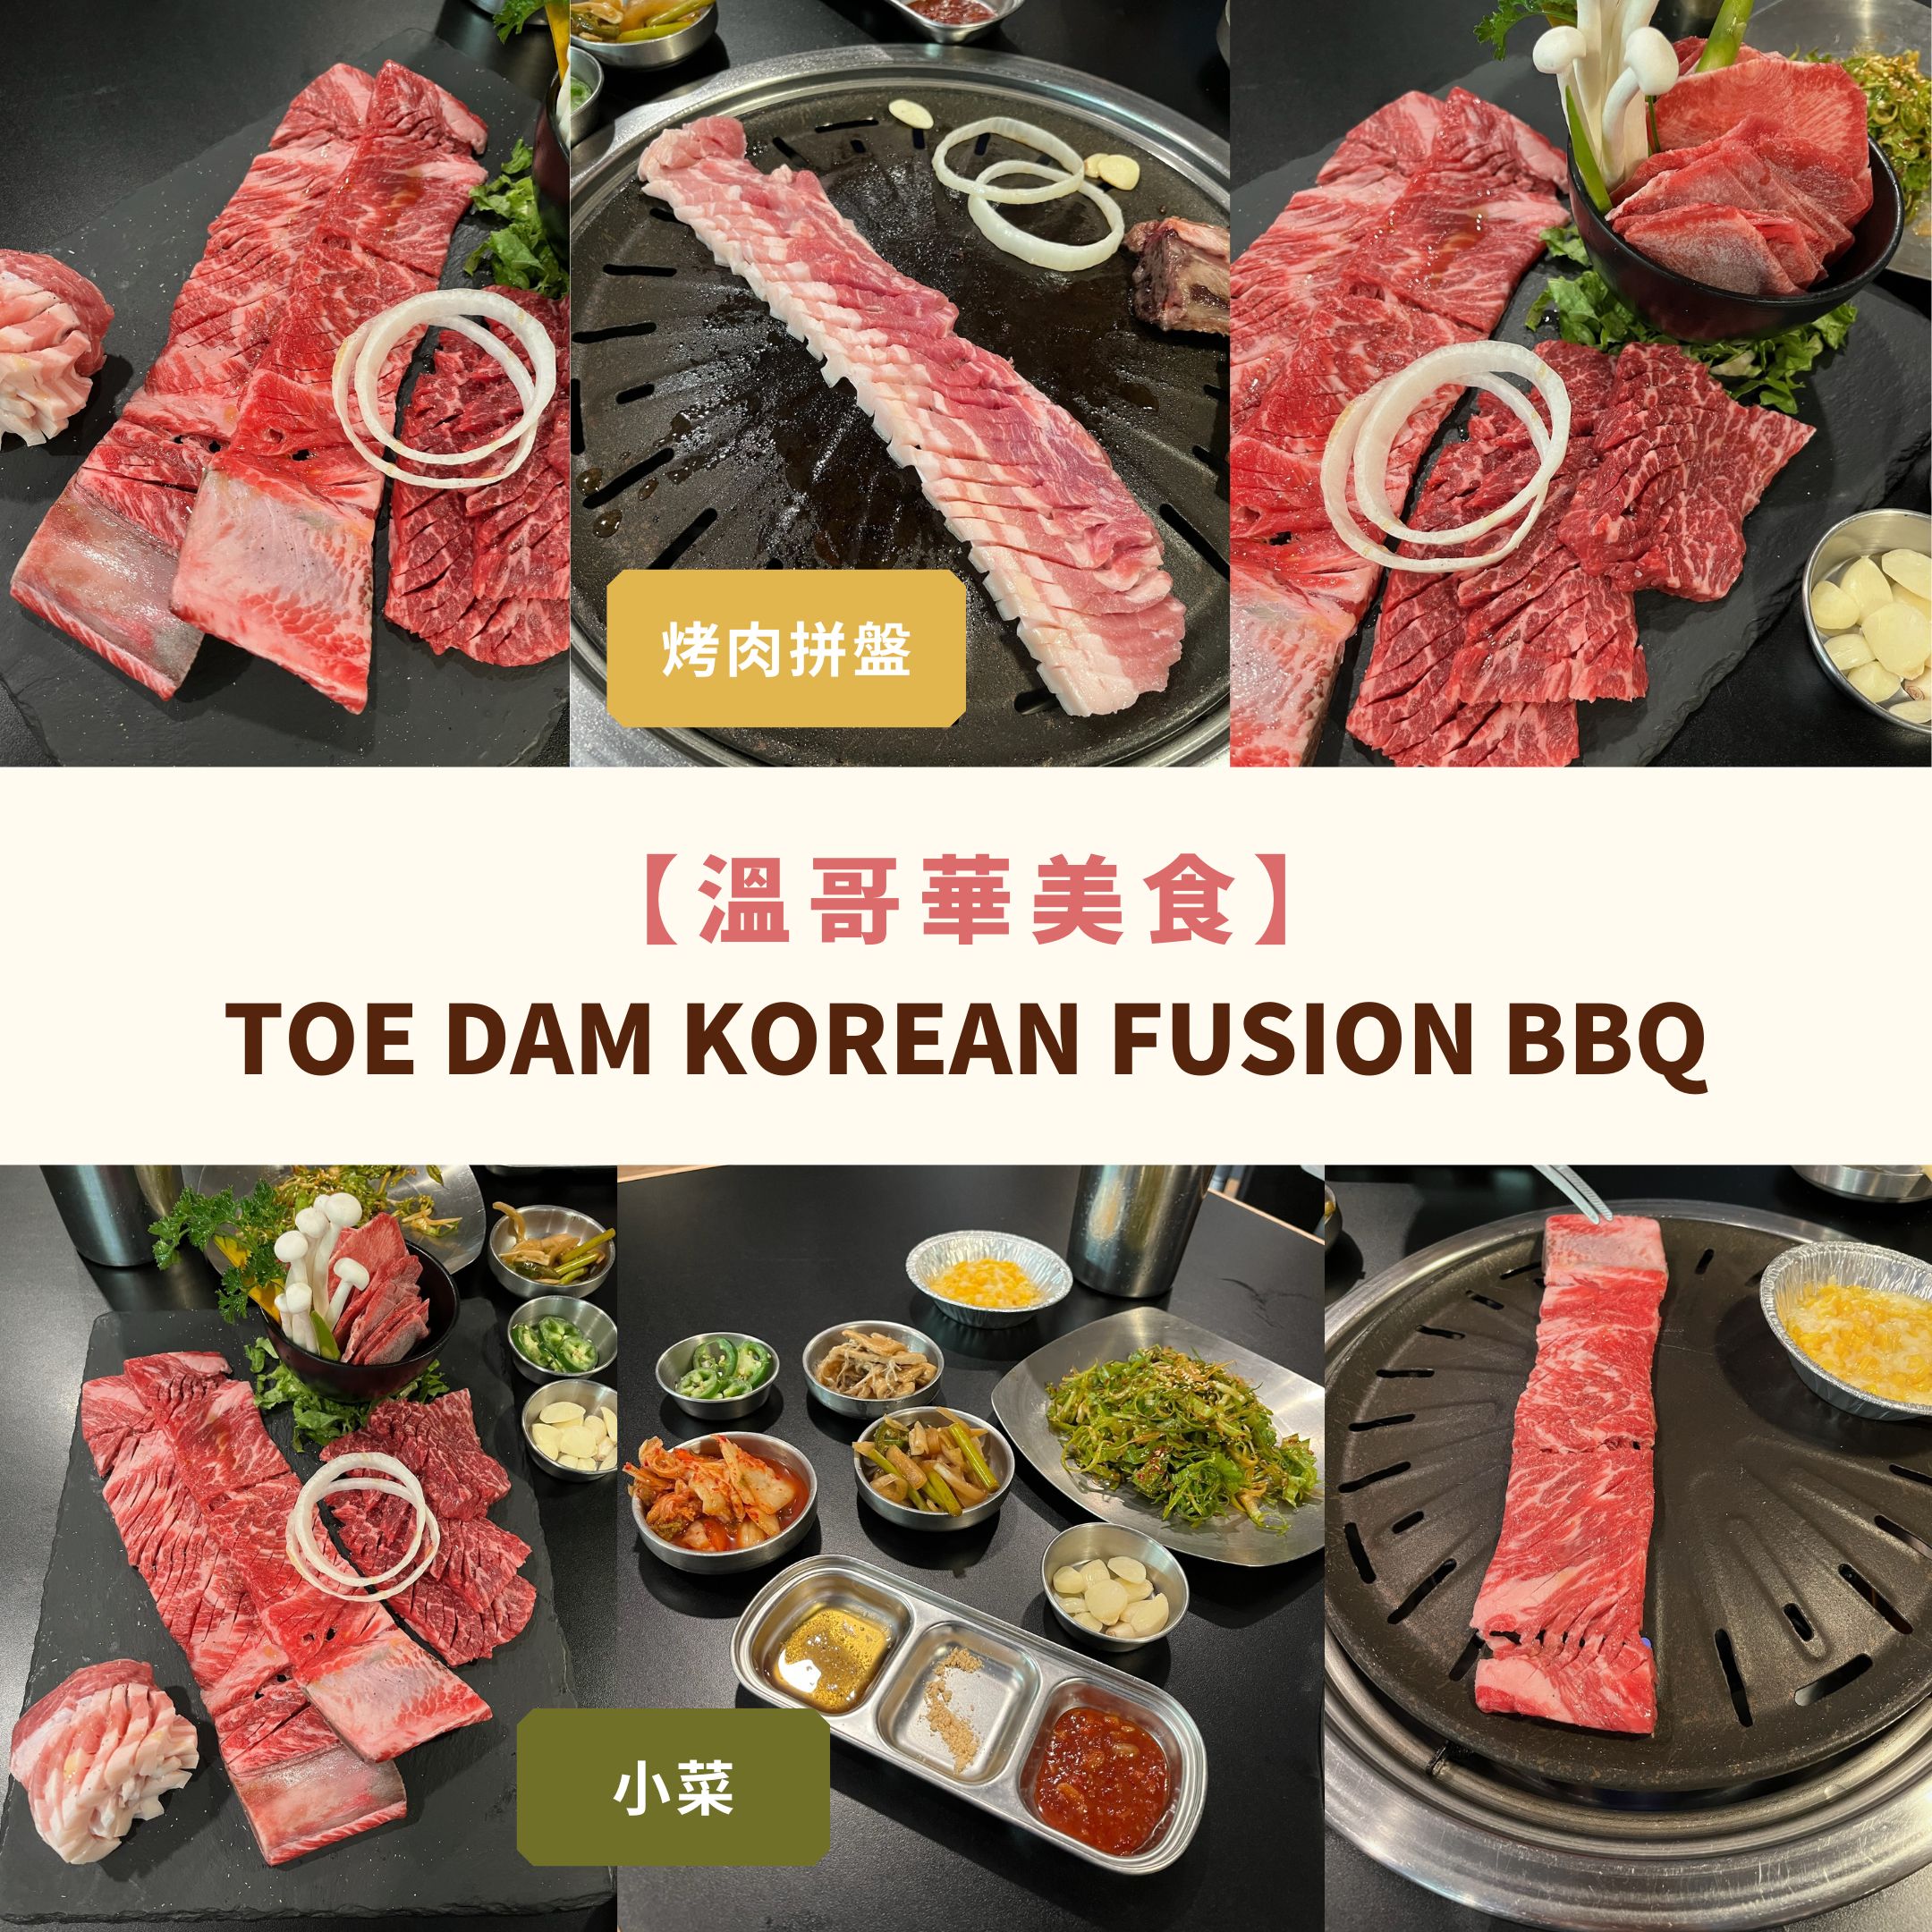 溫哥華美食 lougheed 韓國韓燒餐廳 toe dam bbq